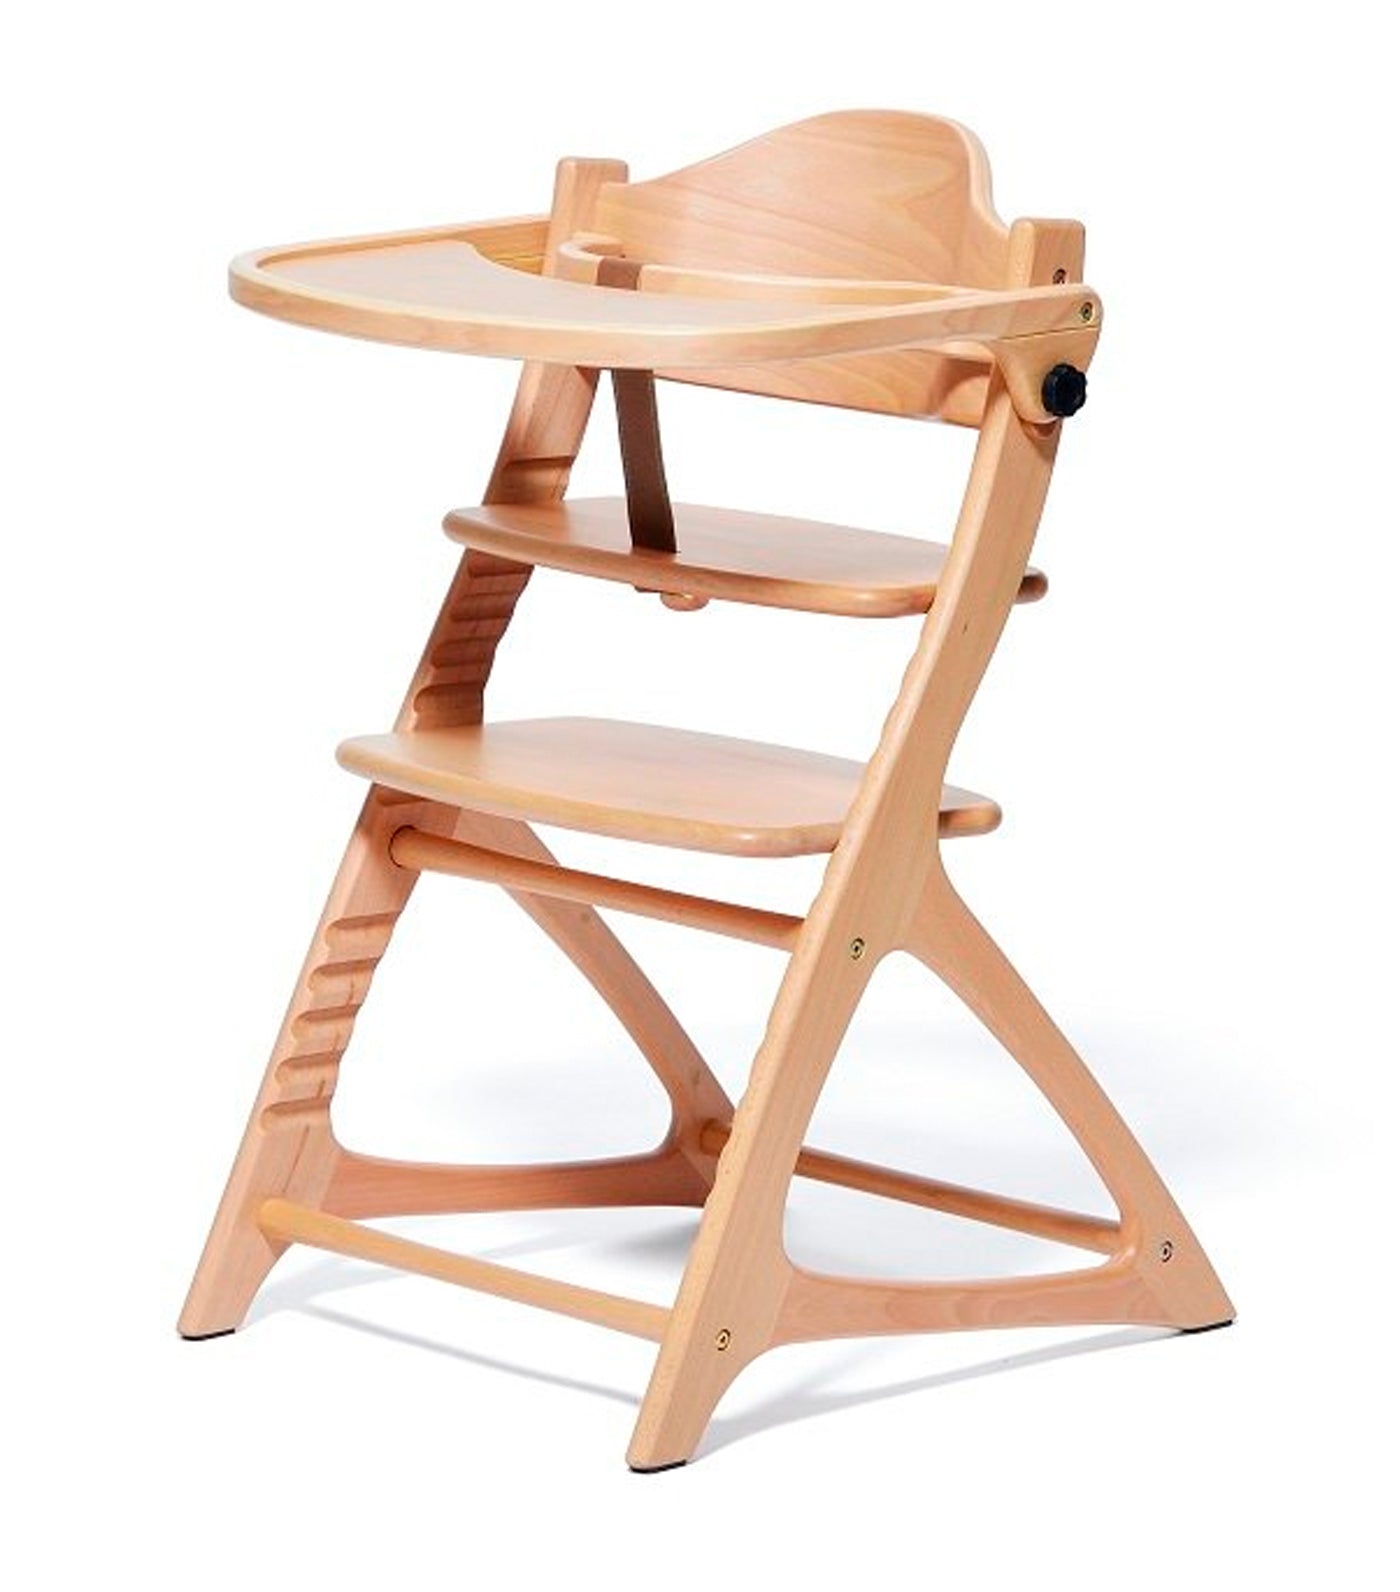 Materna Wooden High Chair - Natural